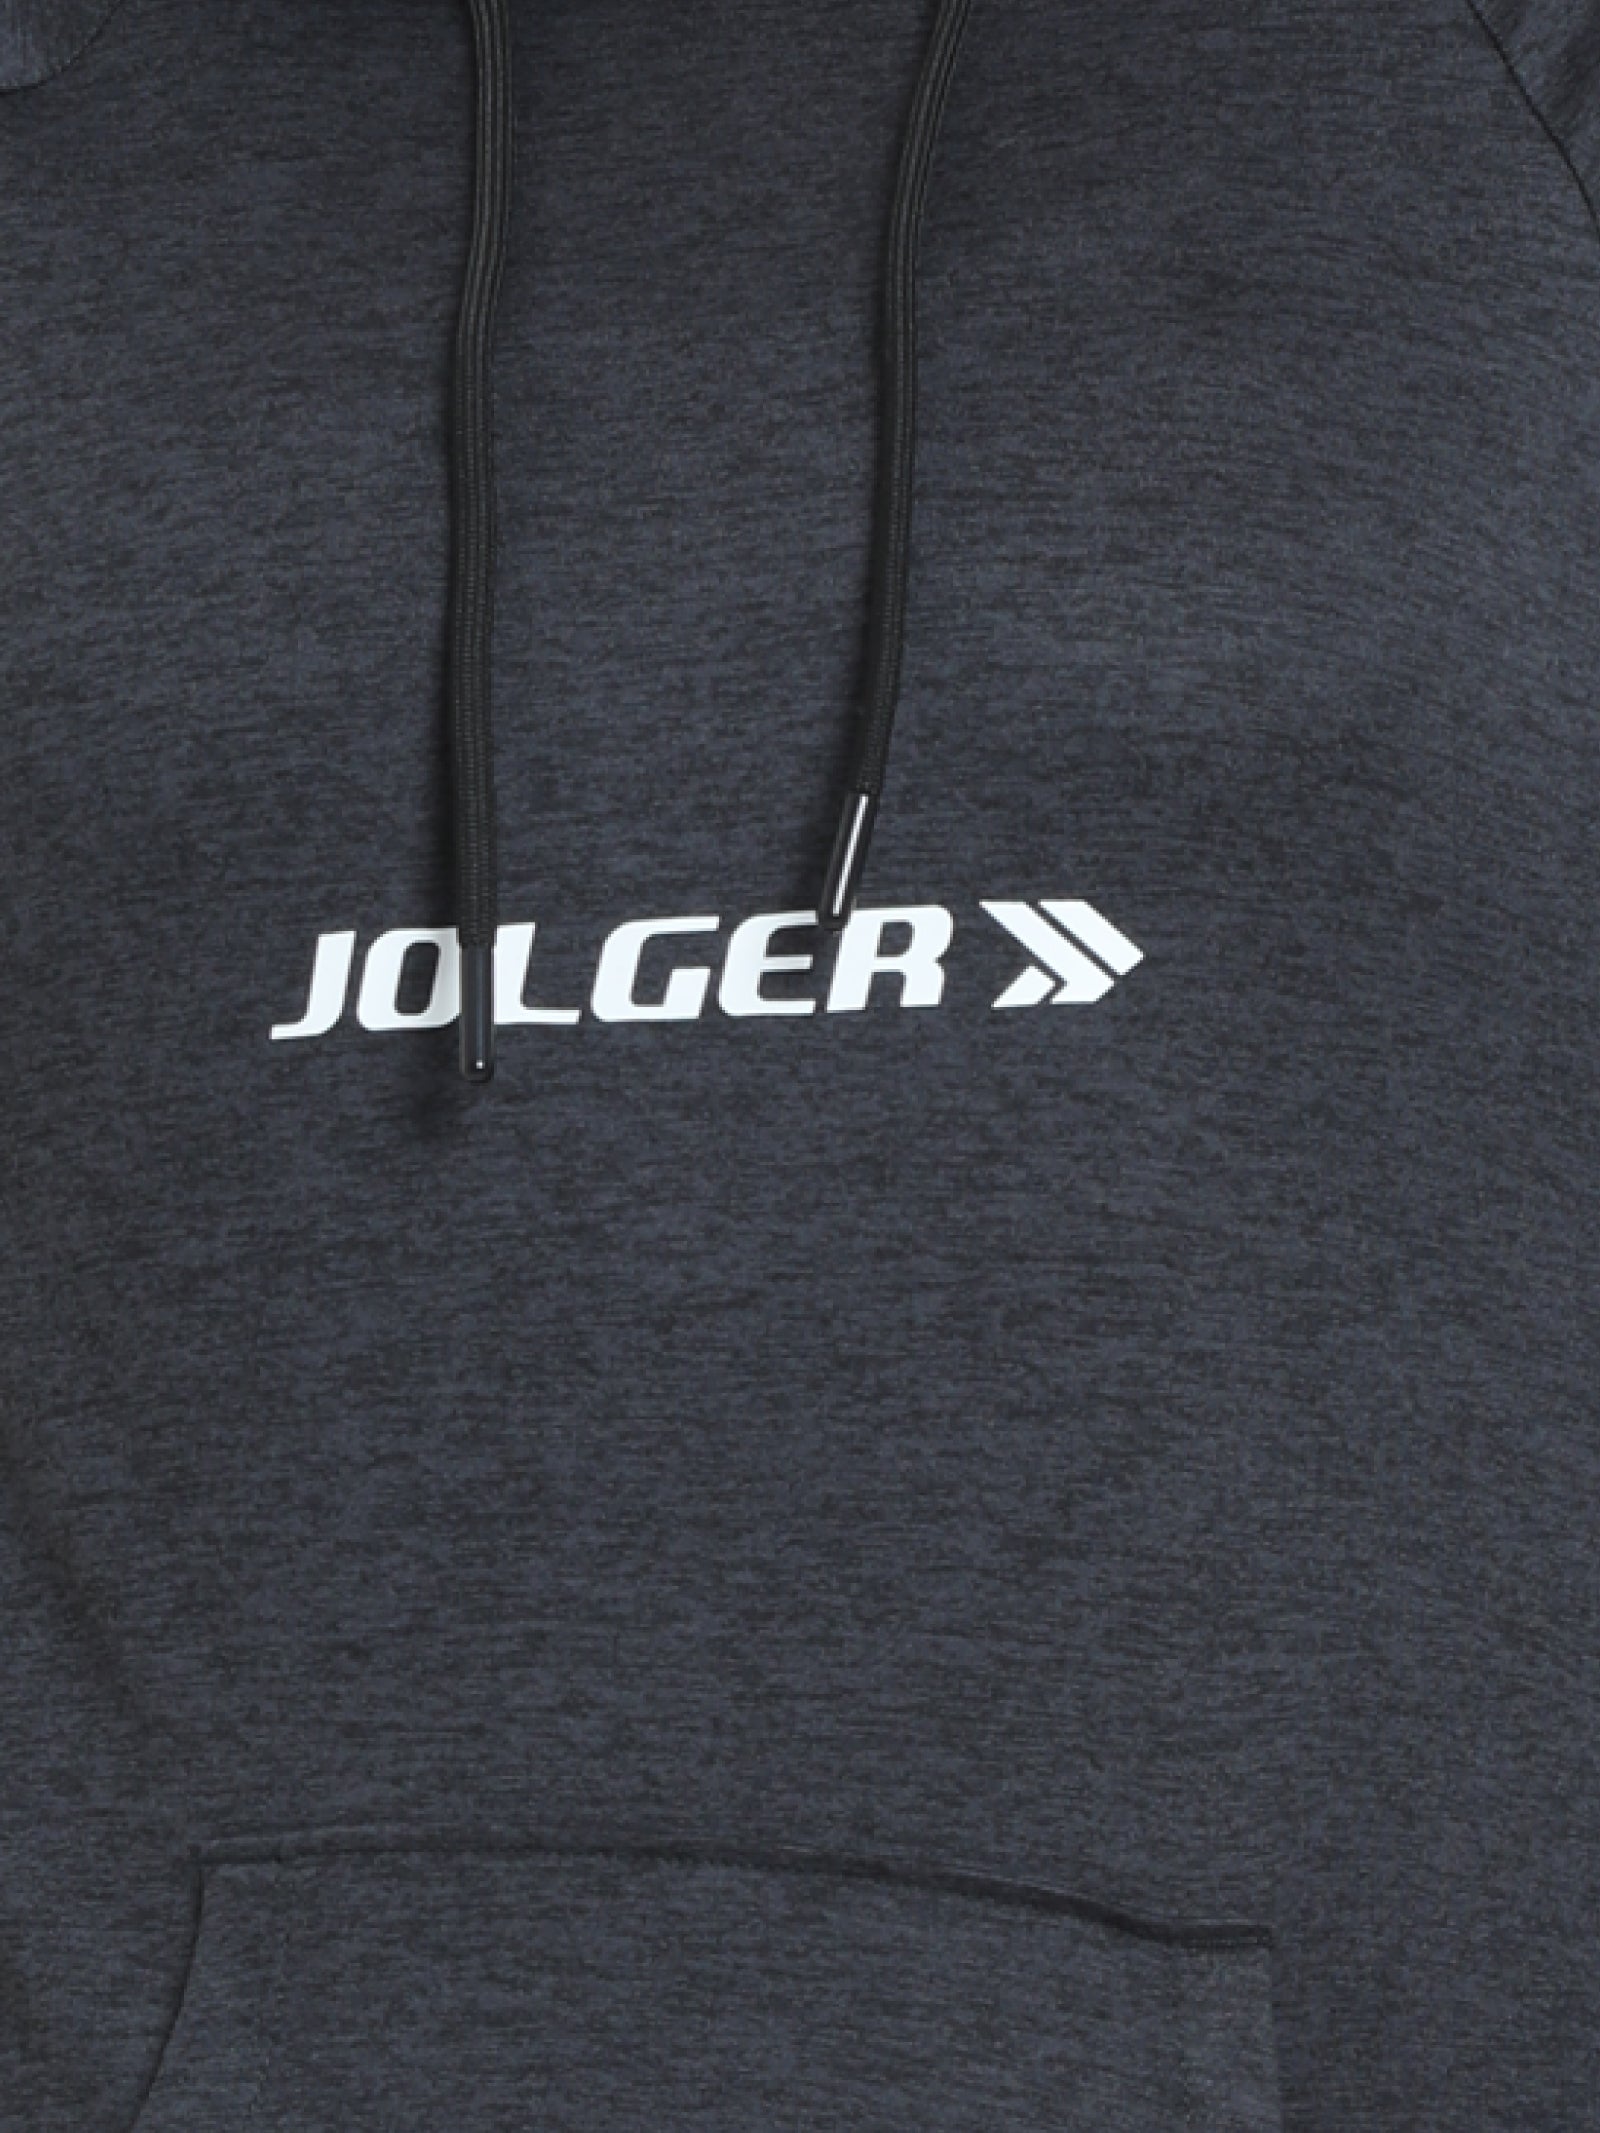 JOLGER #black-solid